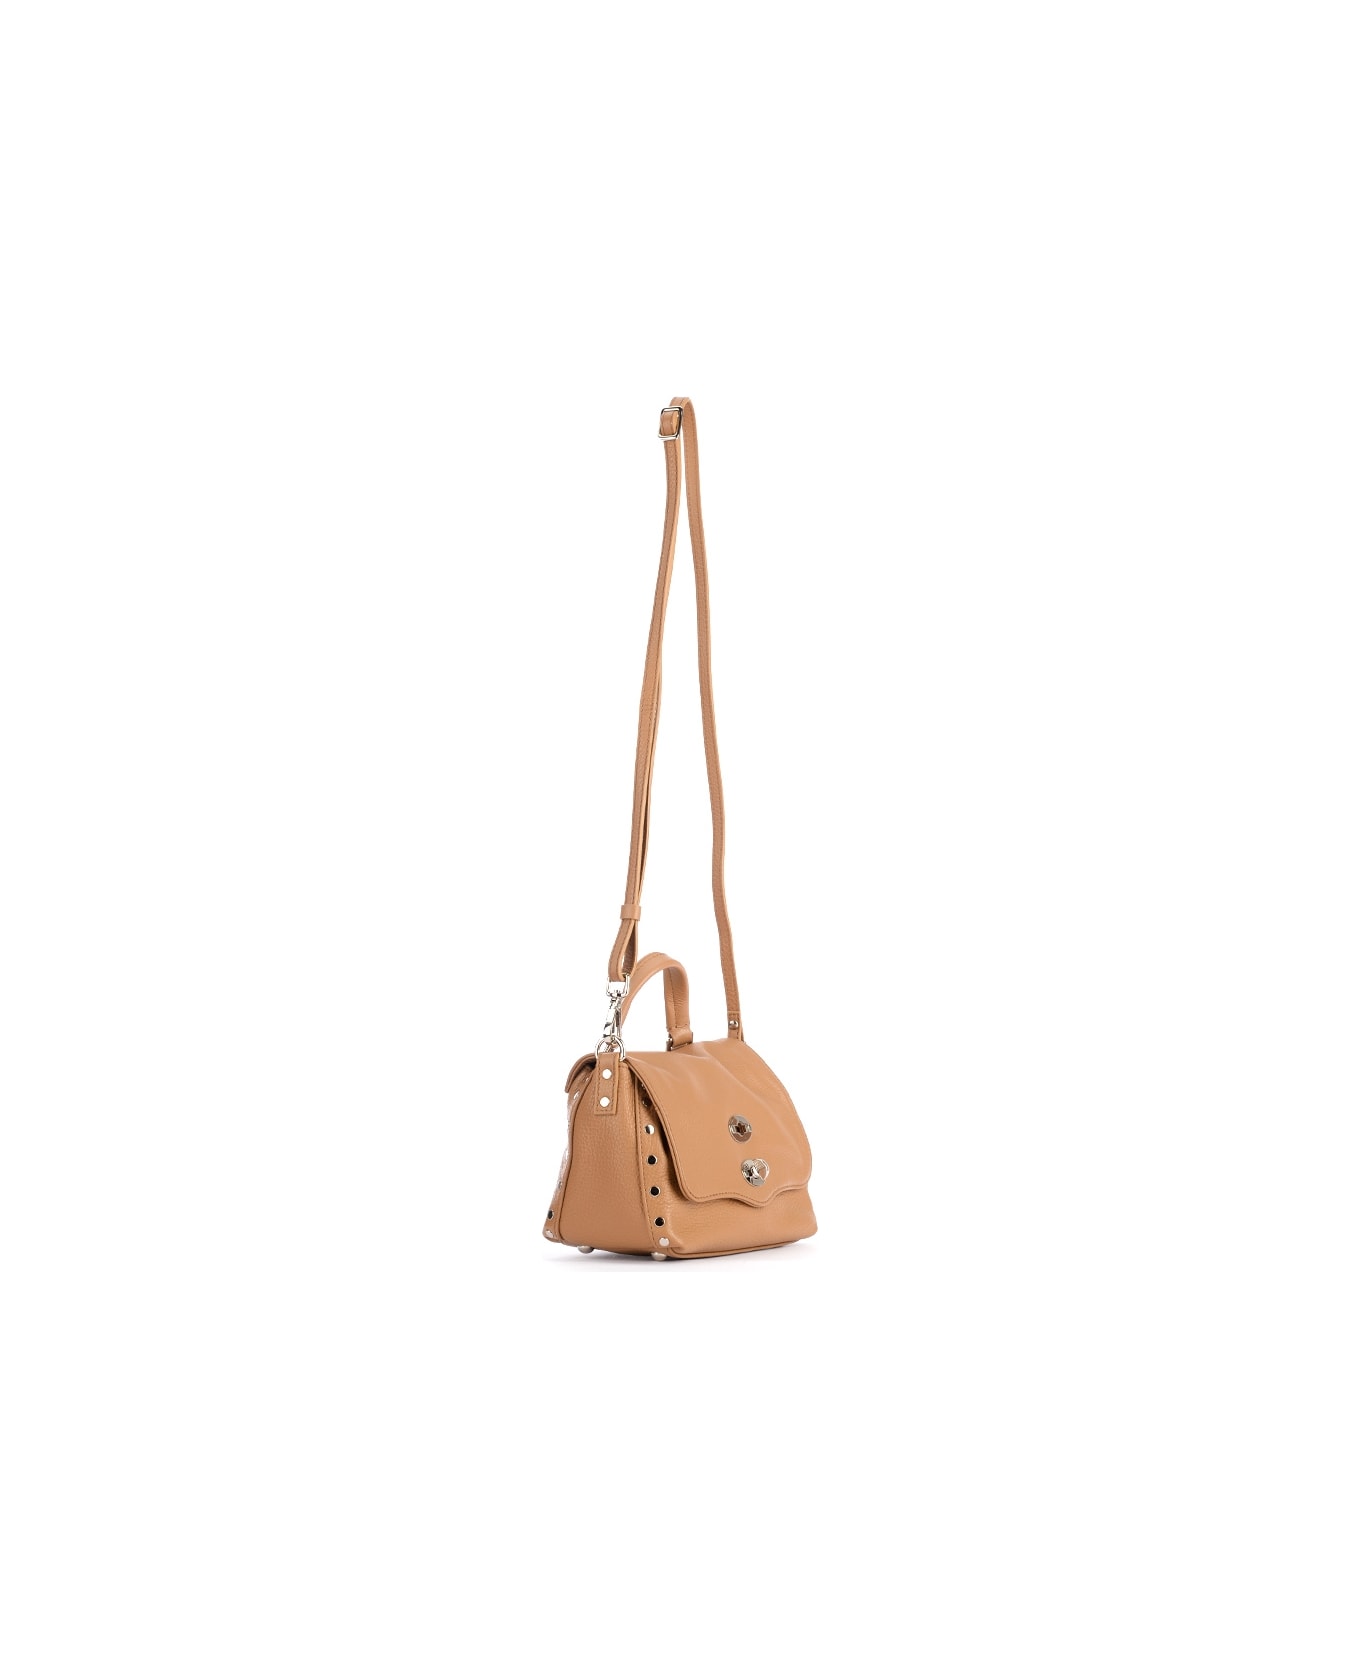 Zanellato Postina Daily Baby Bag In Cappuccino-colored Grained Leather - Cappuccino トートバッグ